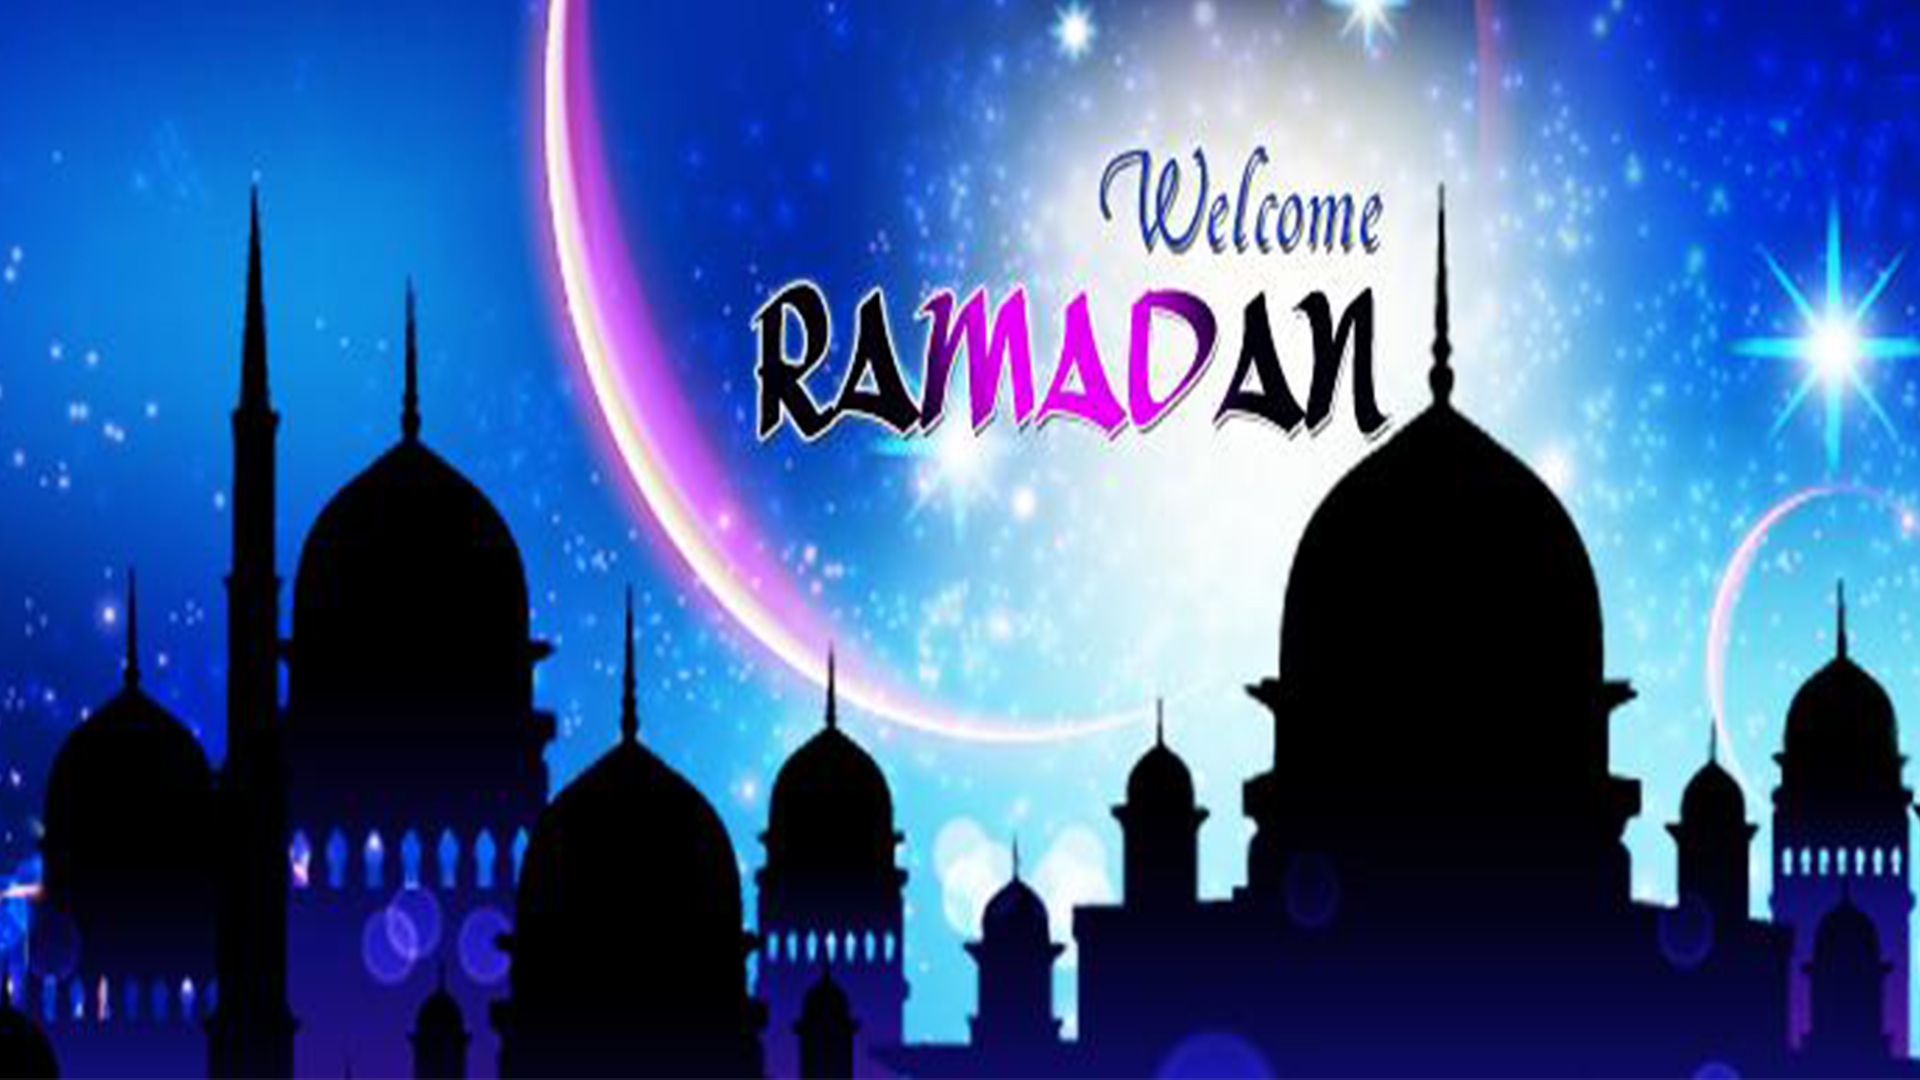 welcome ramadan image